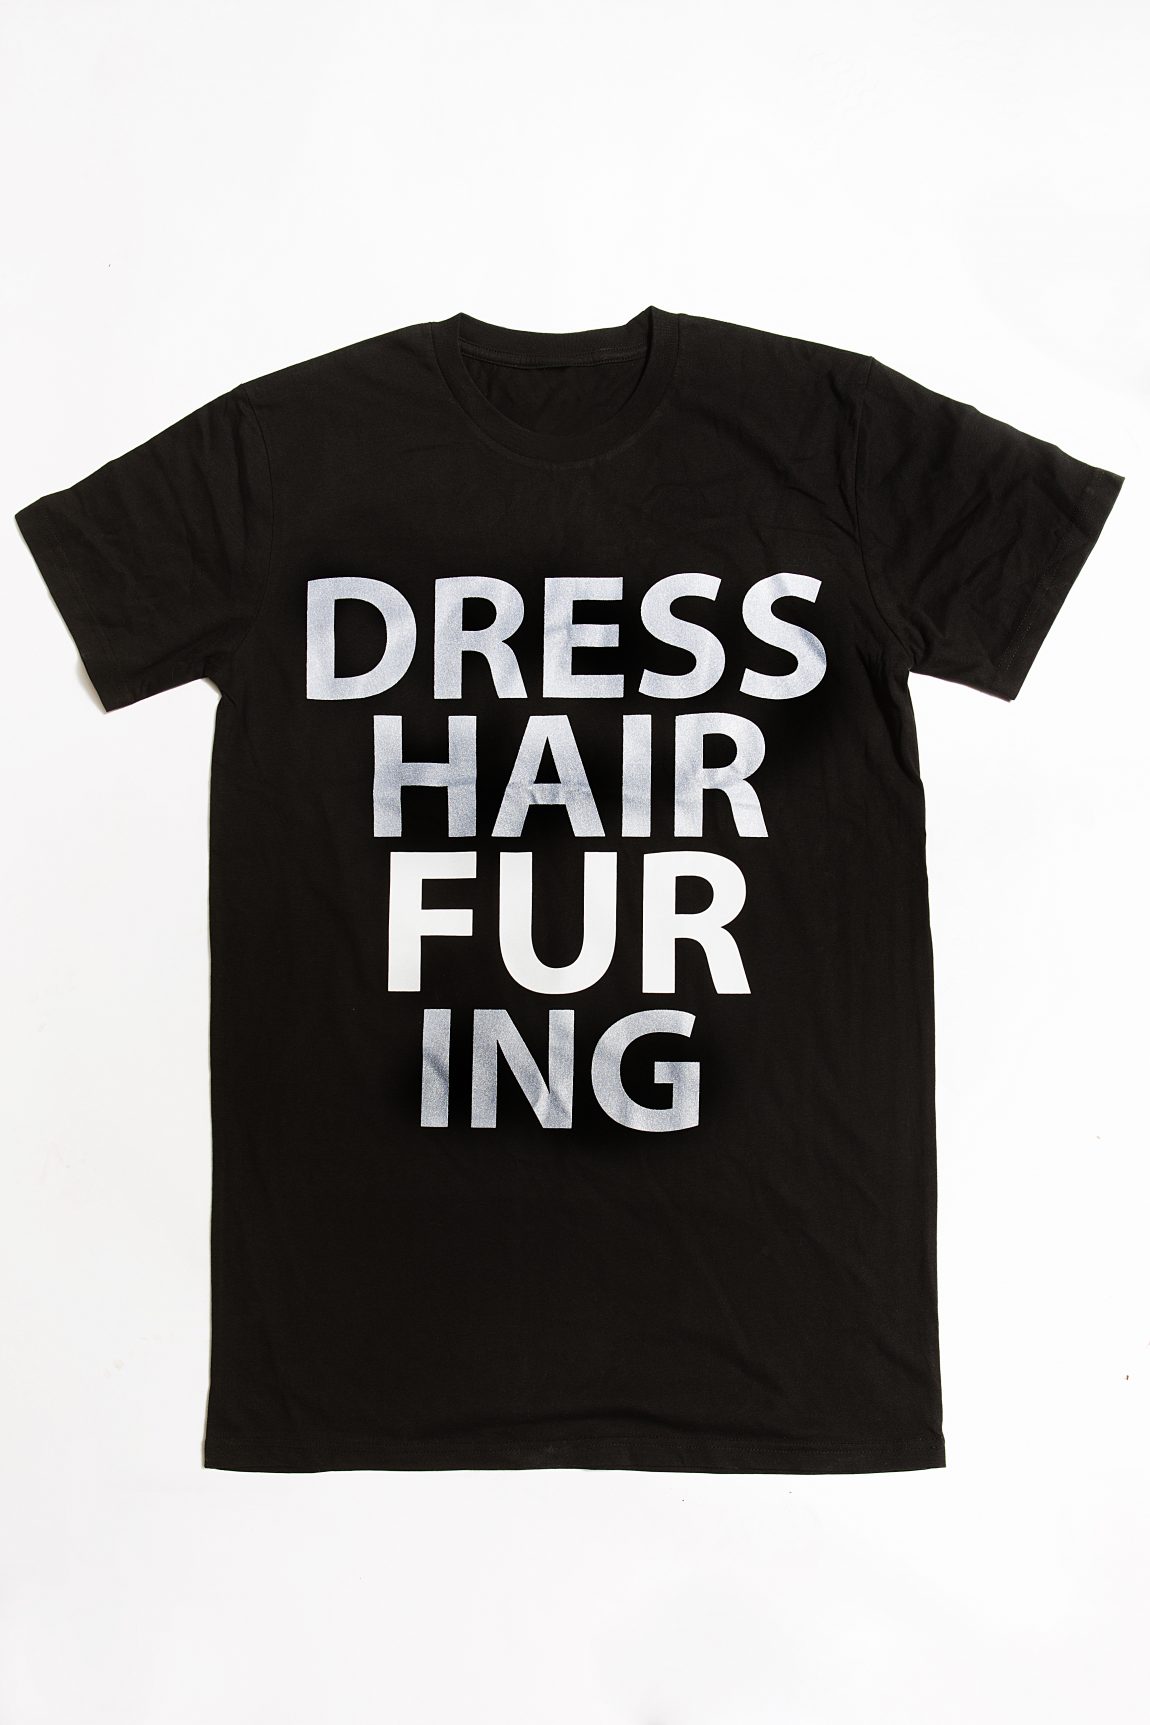 DRESS-HAIR-FUR-ING T-shirt – Black